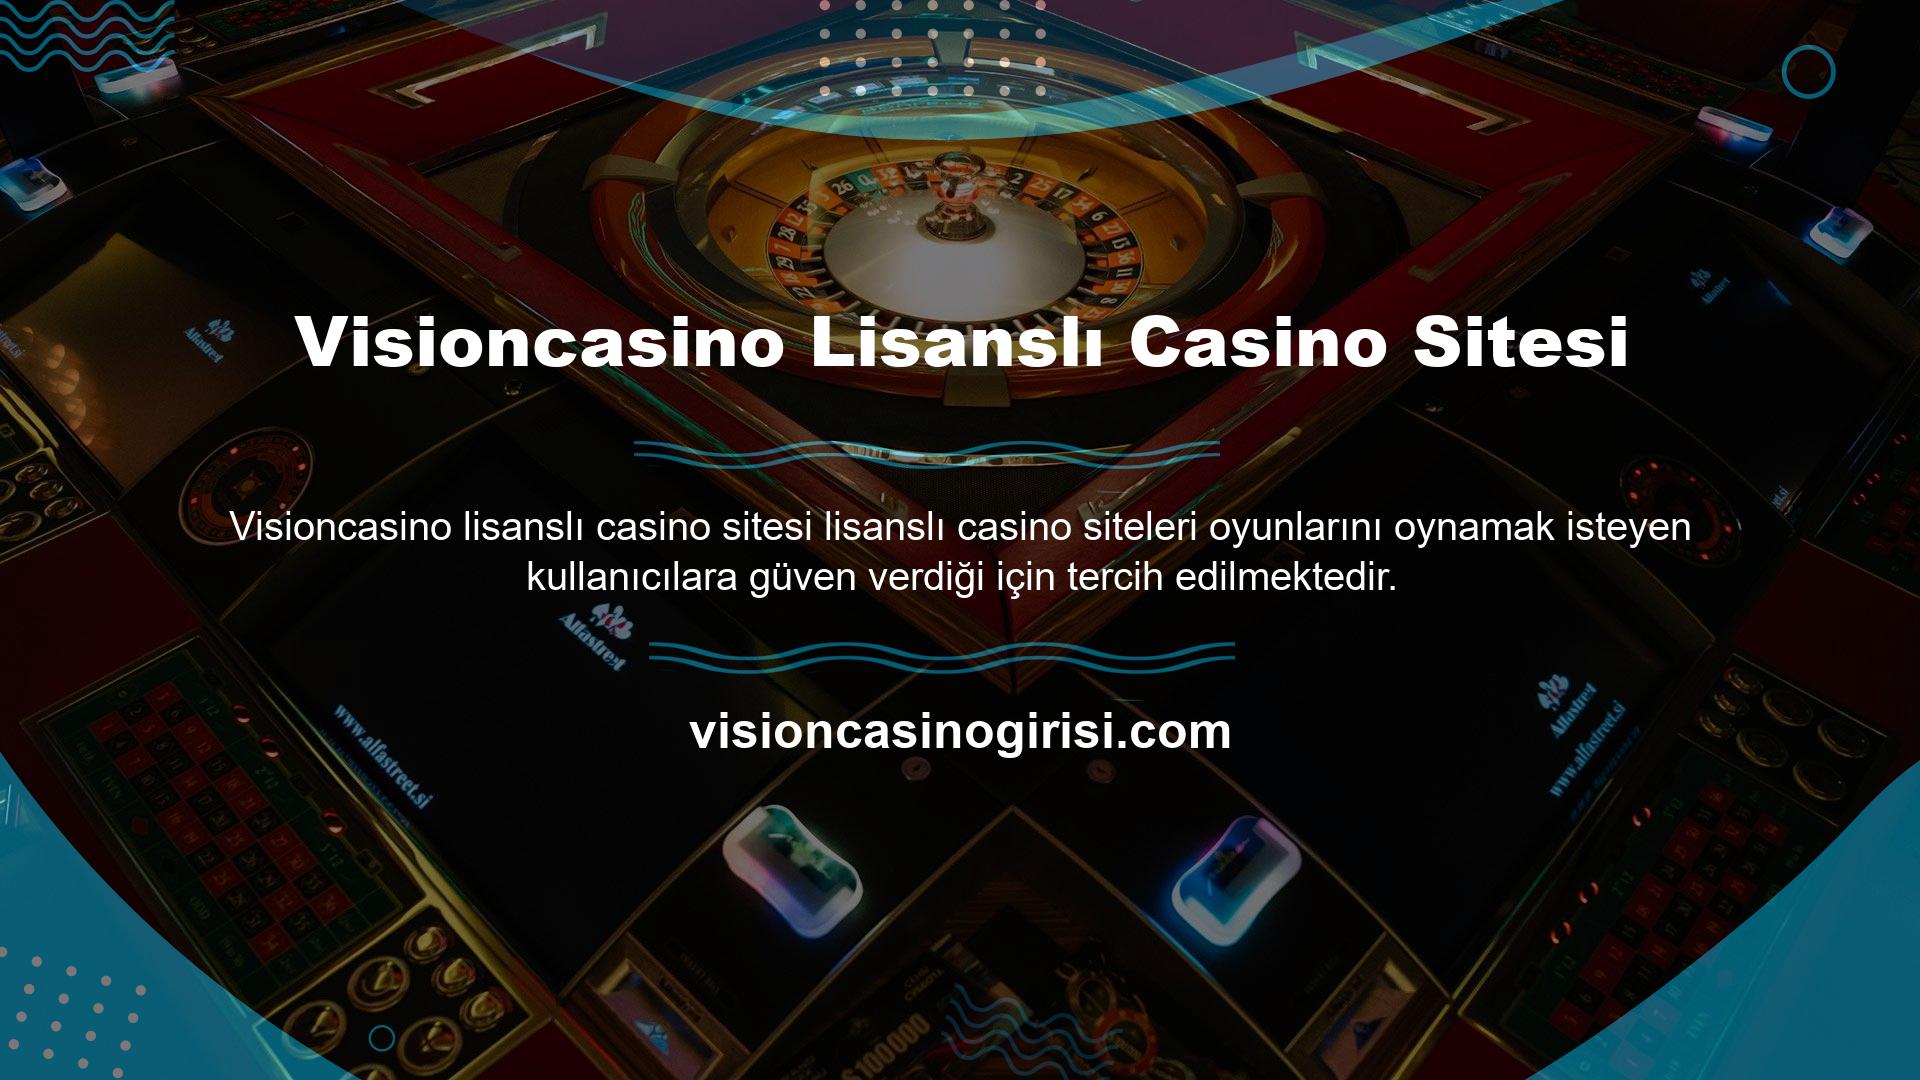 Casino sitesi, internette vakit kaybetmeden casino heyecanını yaşayabileceğiniz bir maceradır